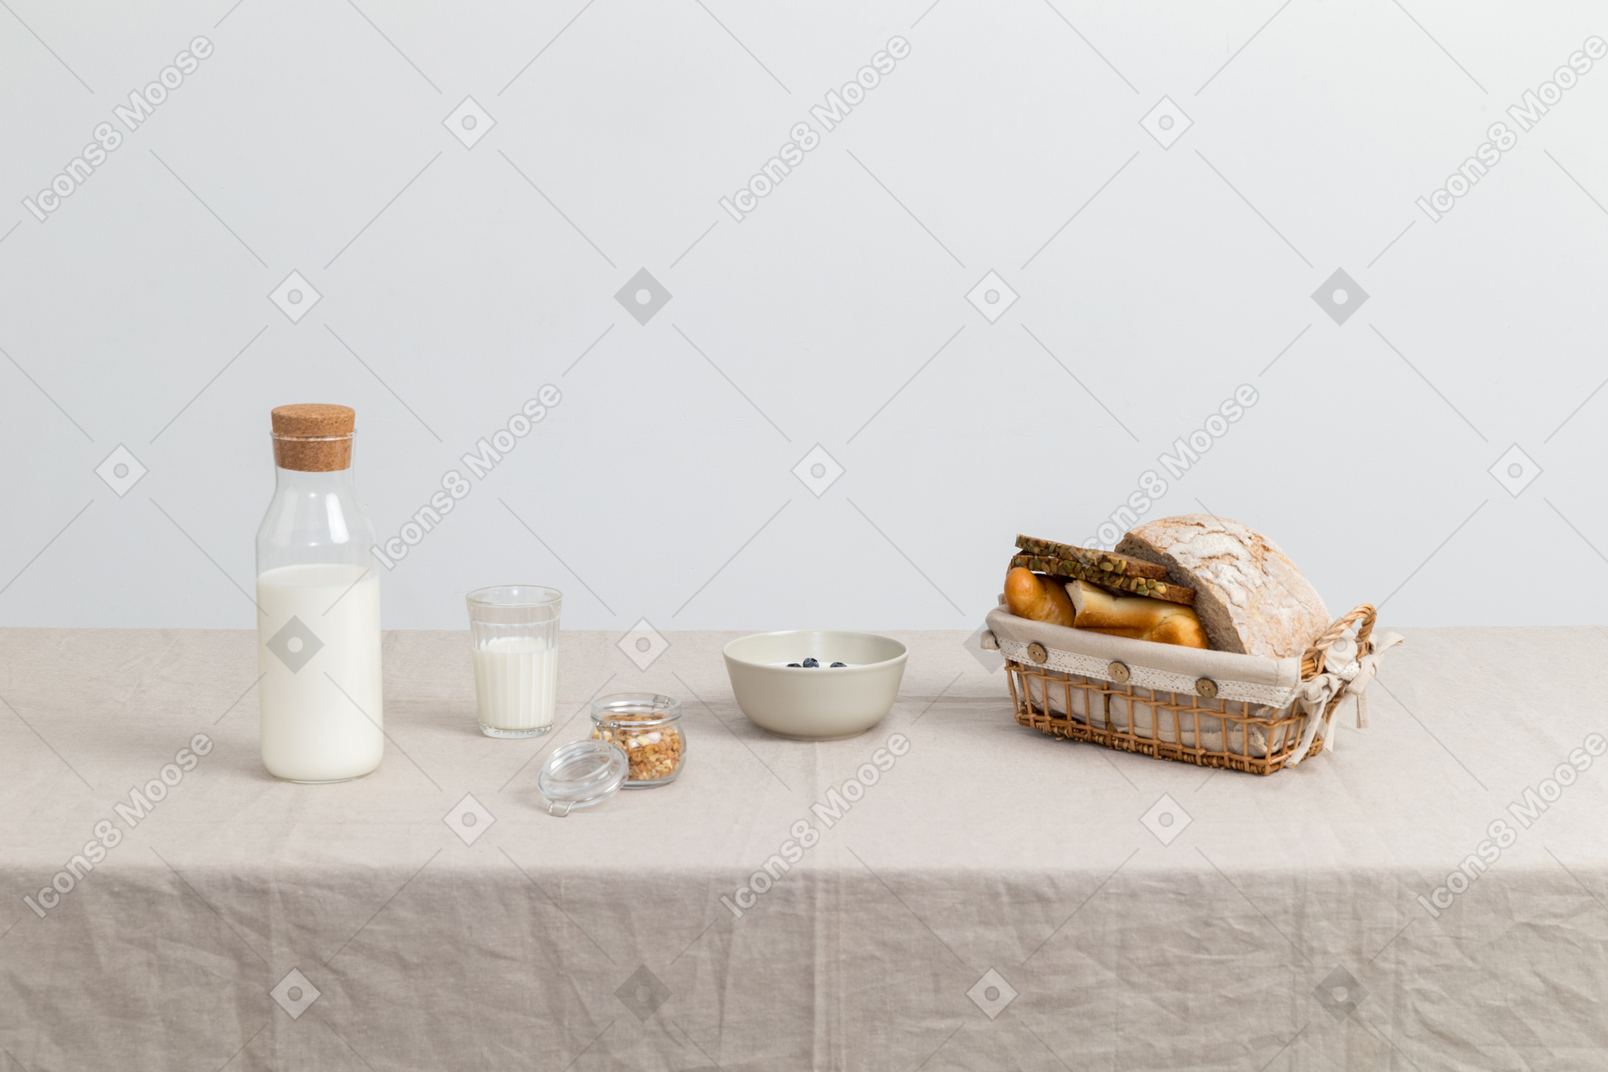 牛乳瓶、牛乳とパンのガラス